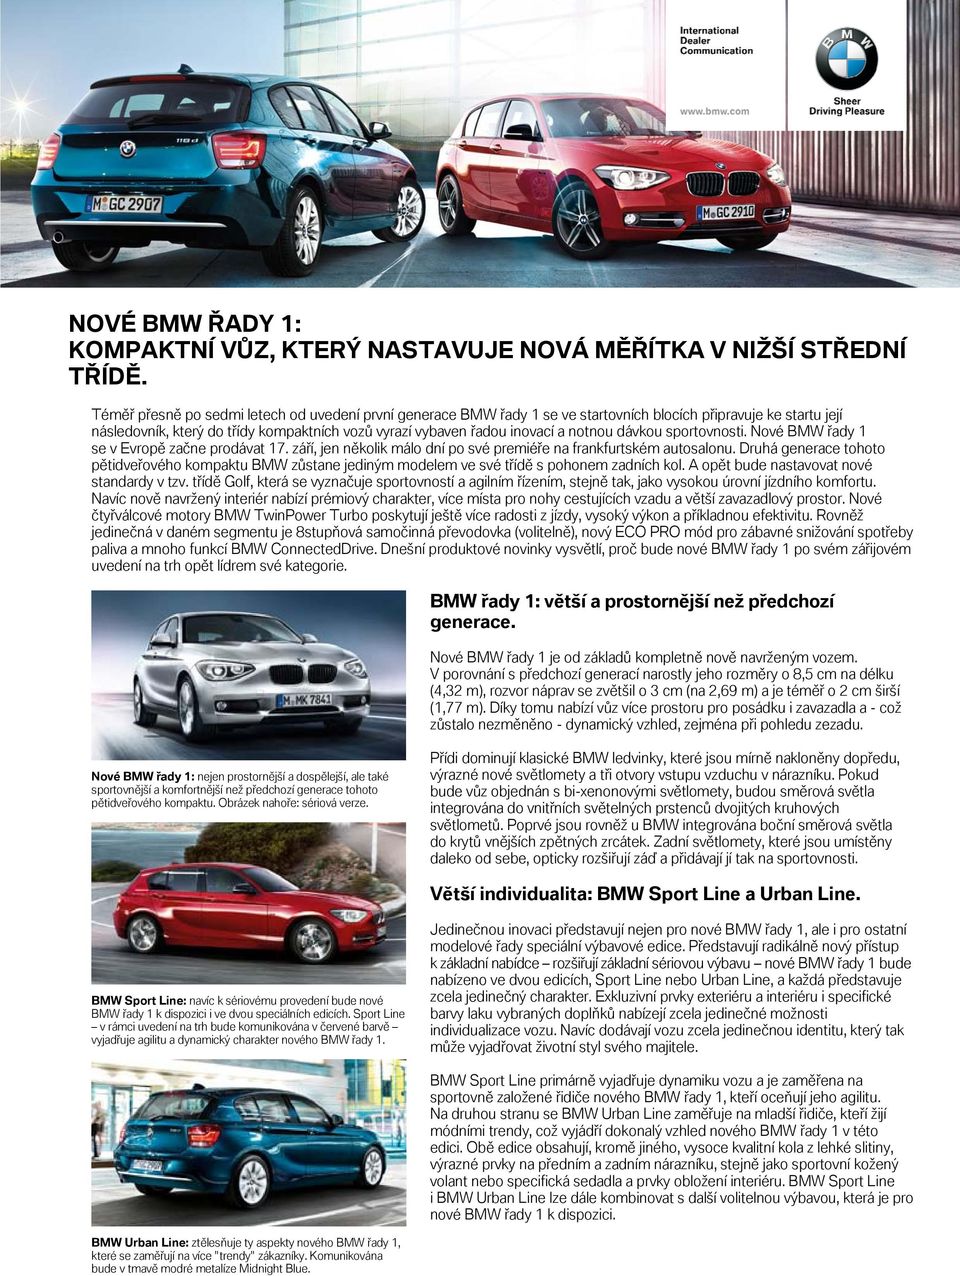 notnou dávkou sportovnosti. Nové BMW řady 1 se v Evropě začne prodávat 17. září, jen několik málo dní po své premiéře na frankfurtském autosalonu.